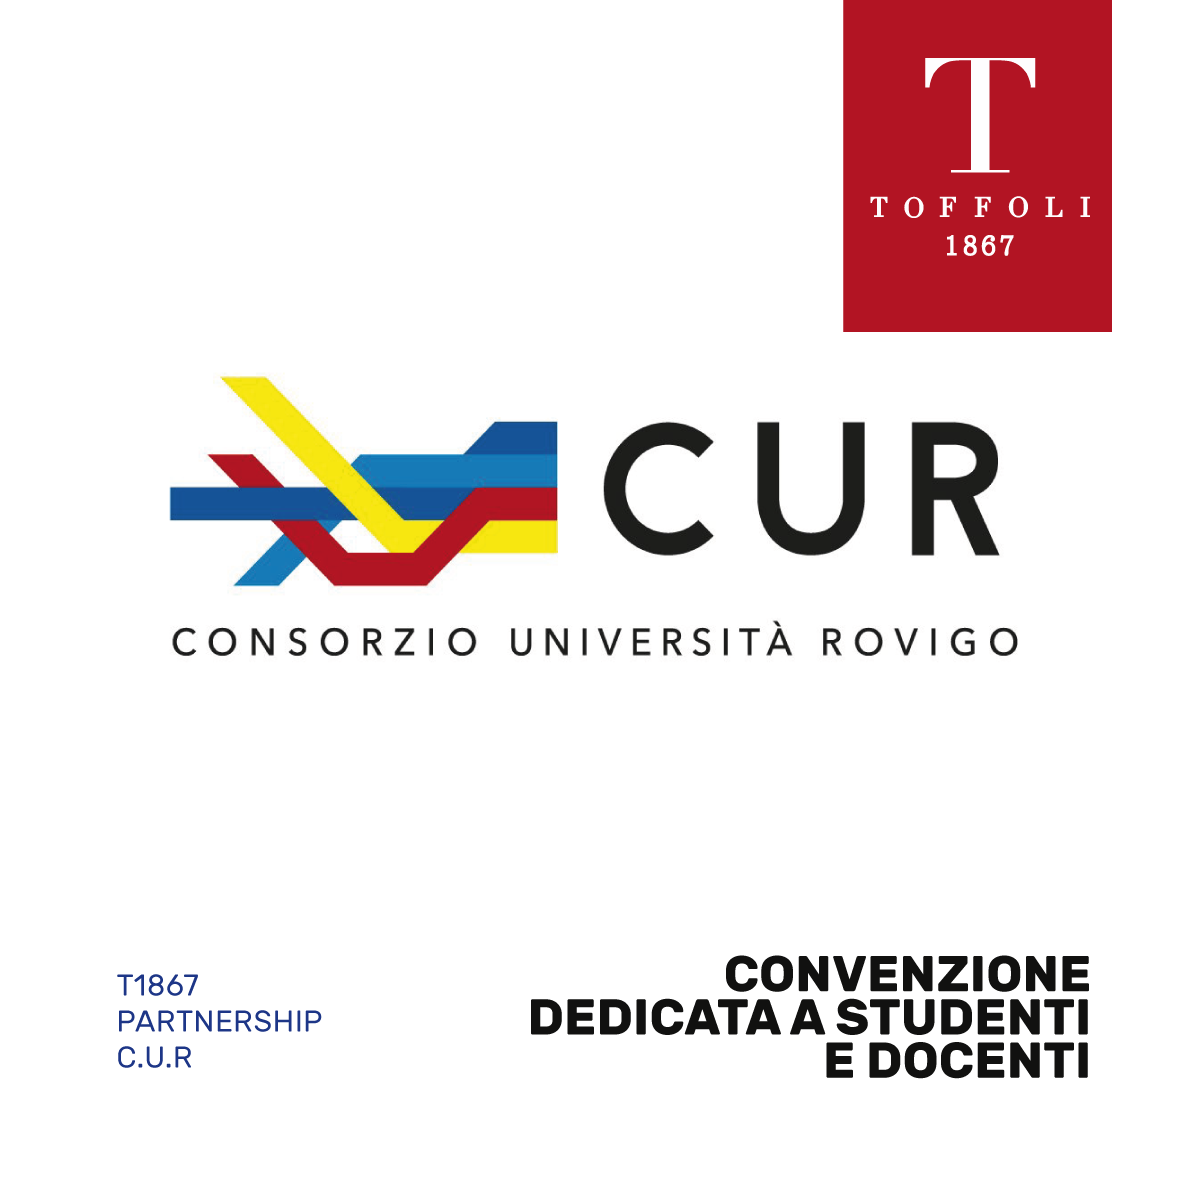 C.U.R Consorzio università di Rovigo Toffoli 1867 ottici in rovigo convenzione